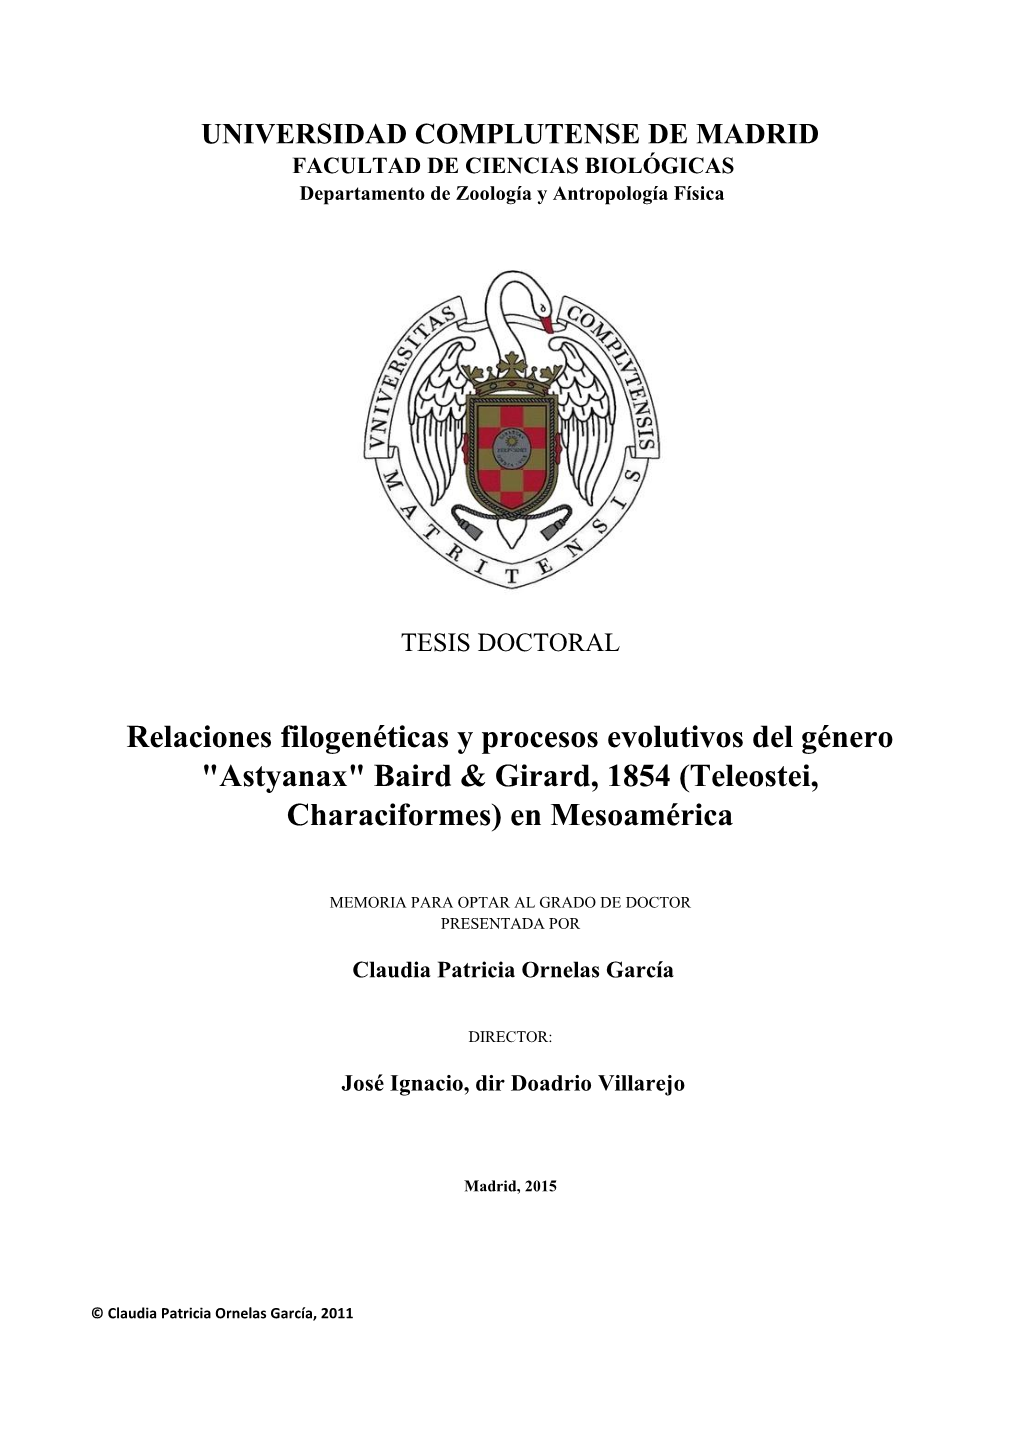 Astyanax" Baird & Girard, 1854 (Teleostei, Characiformes) En Mesoamérica